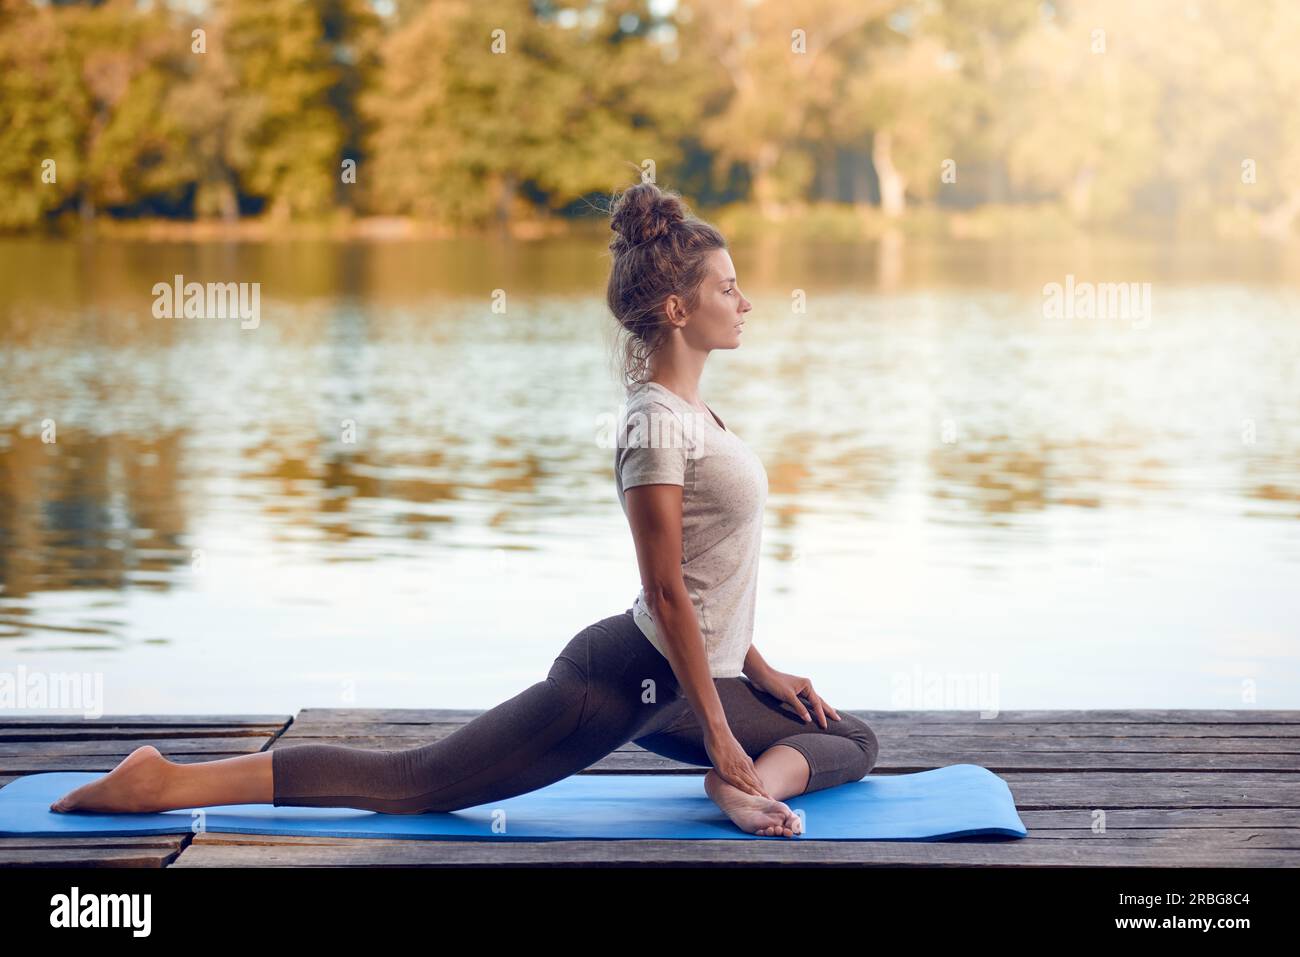 Attractive young woman working out on mat sur une terrasse en bois au-dessus d'un lac ou rivière sitting avec ses yeux fermés et une expression sereine Banque D'Images